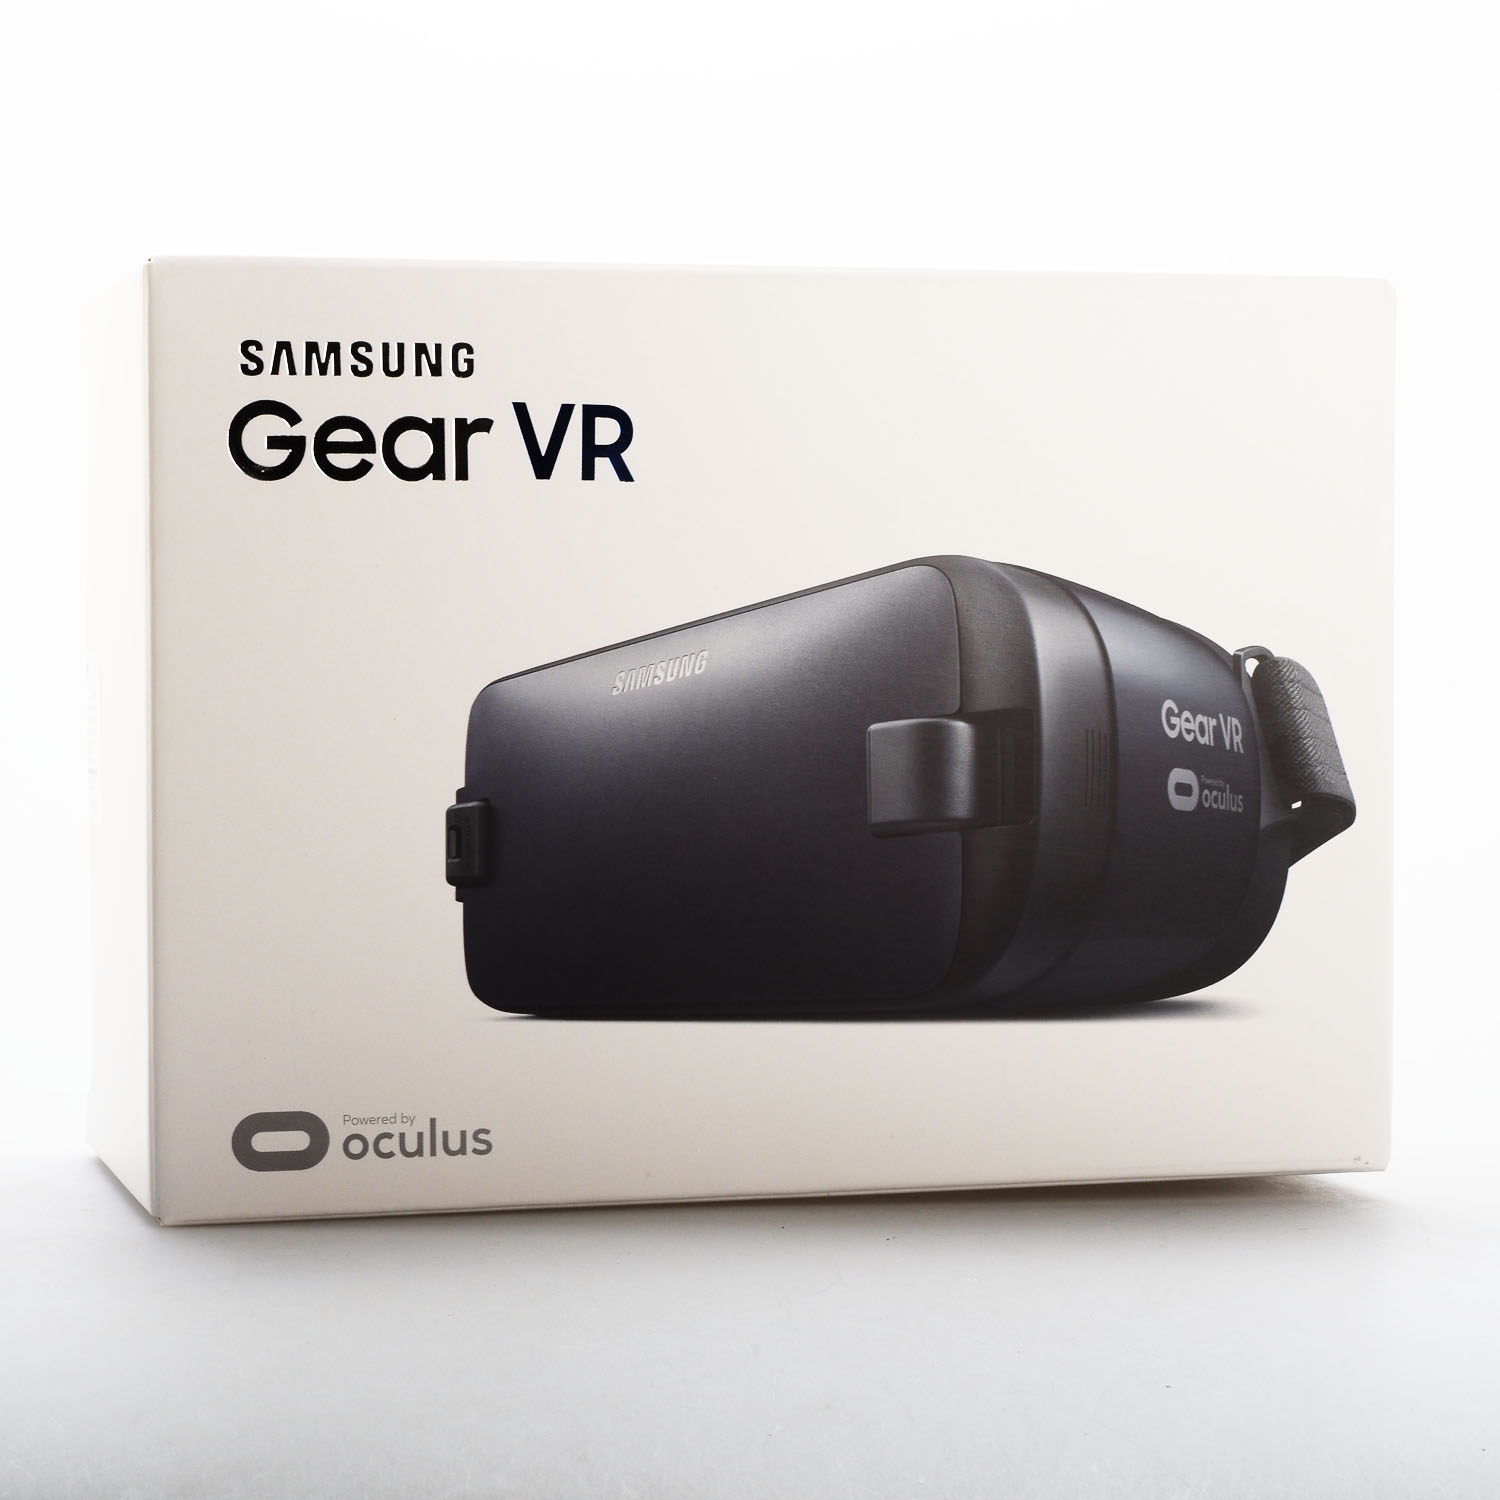 kinh thuc te ao samsung Gear vr r323 chinh hang 20 - Kính thực tế ảo Samsung Gear VR 2 chính hãng